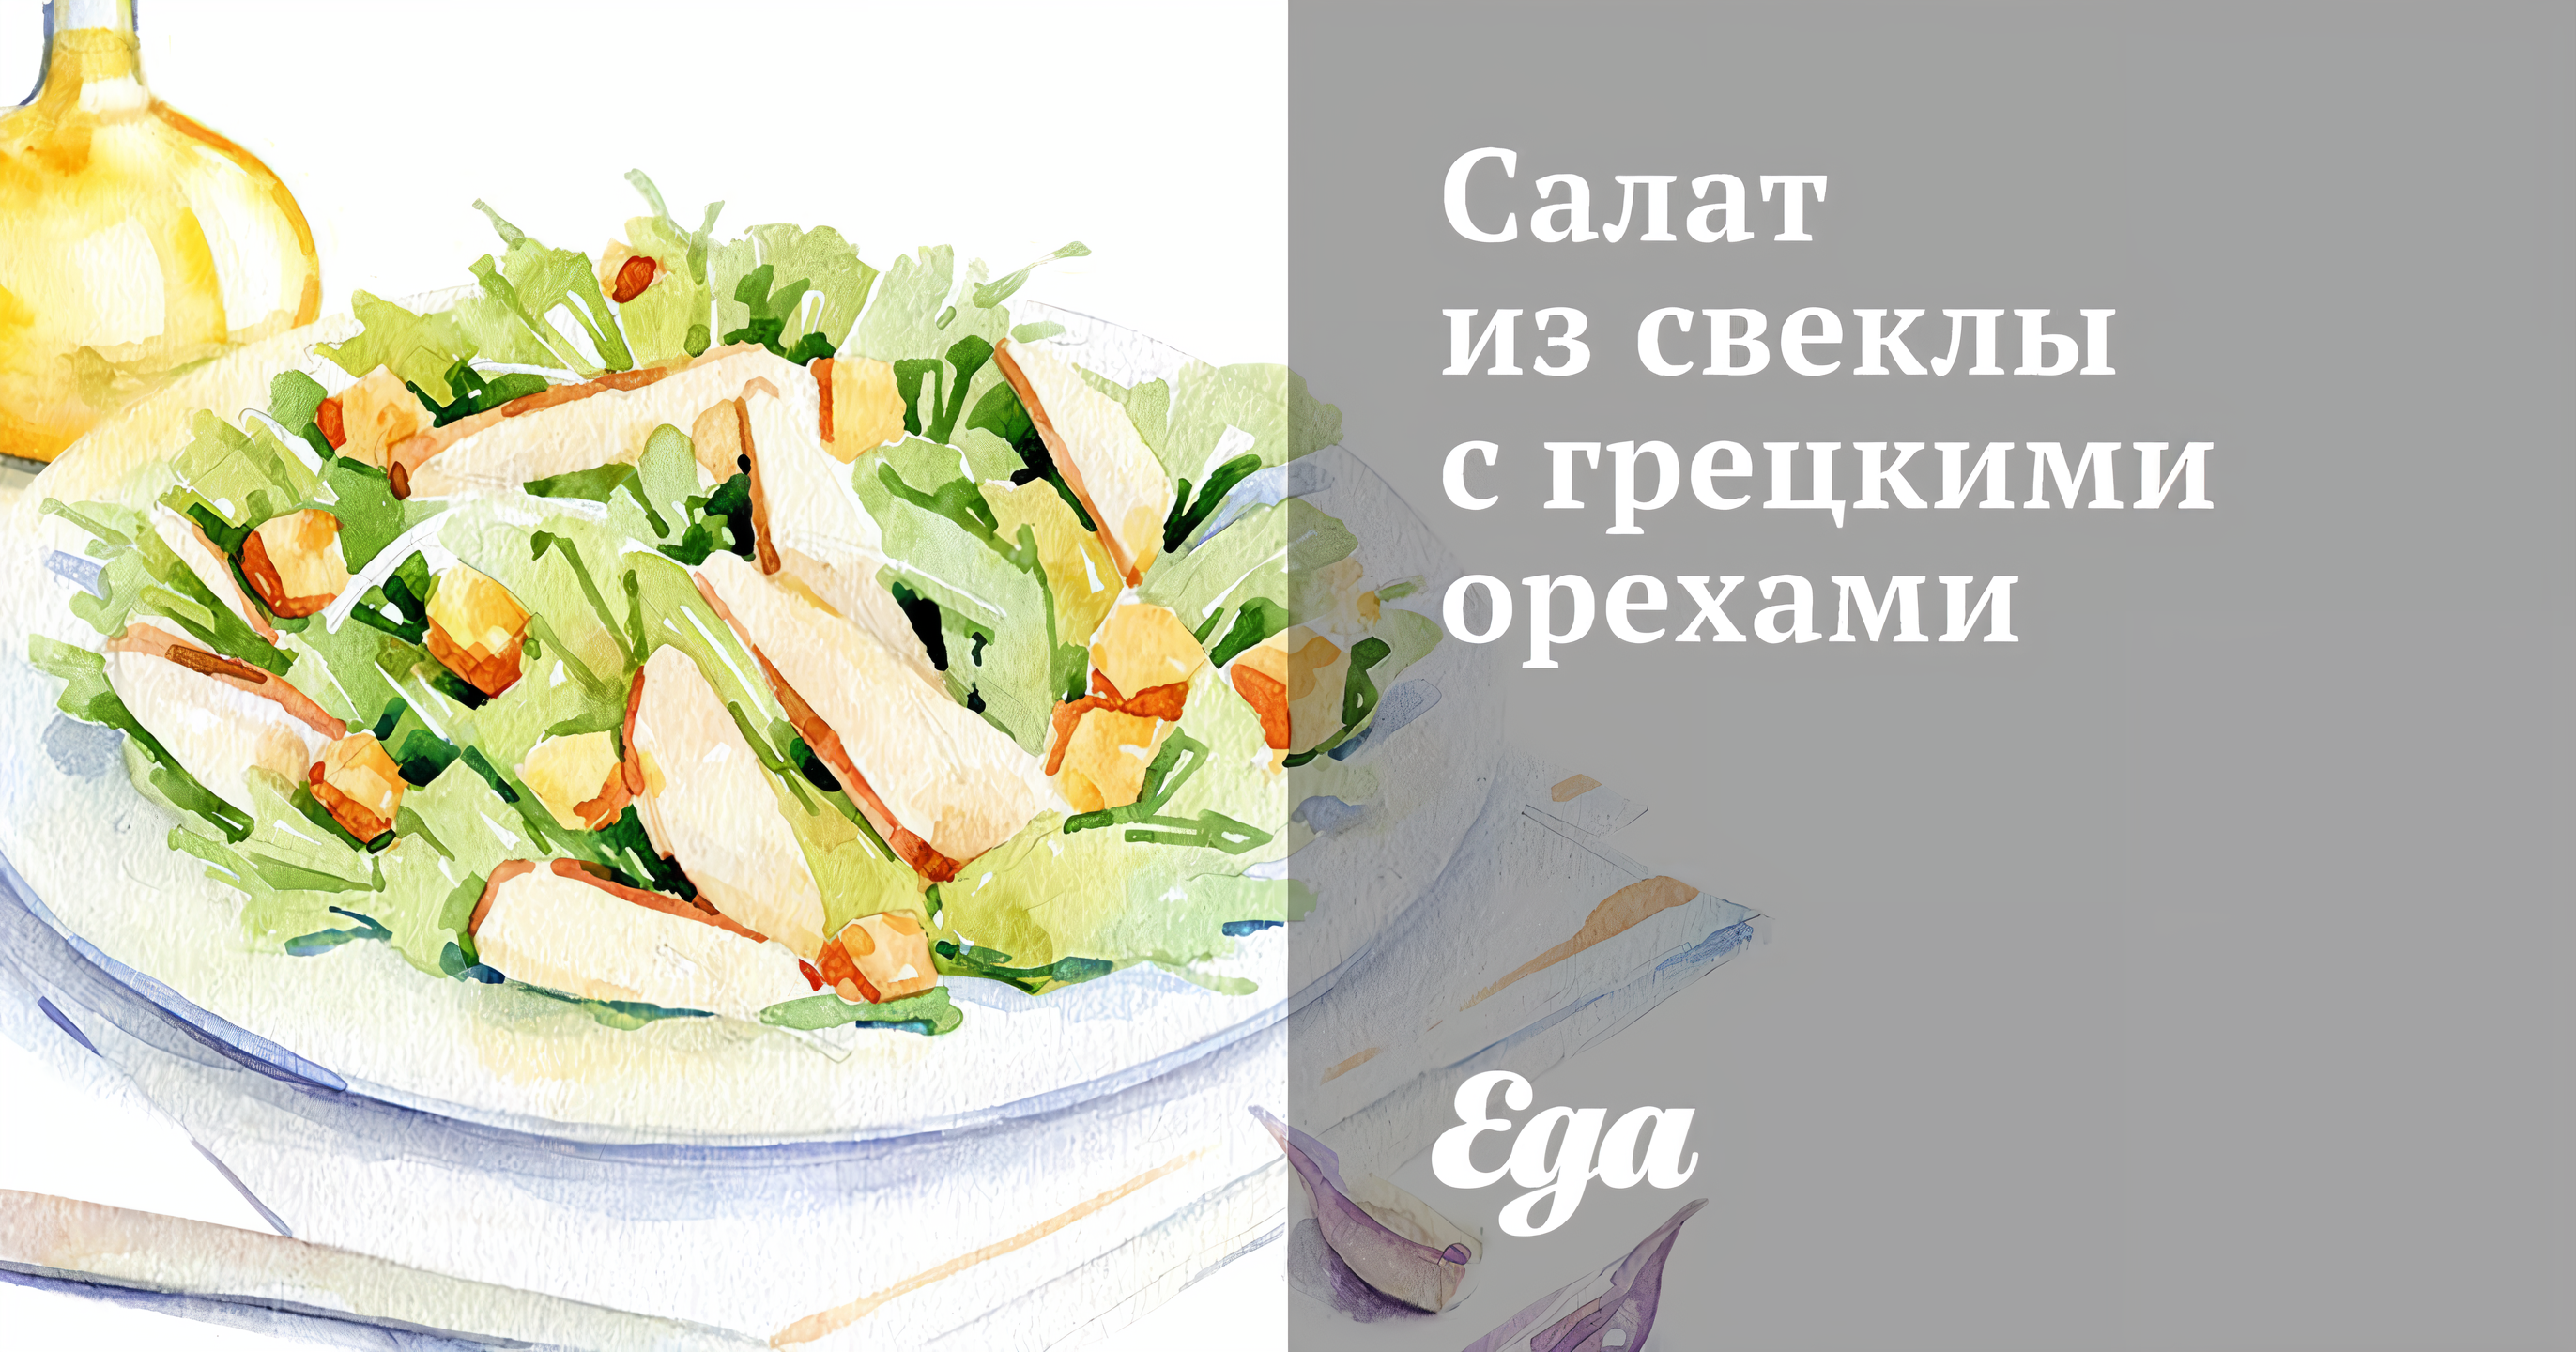 Салат с курицей, свеклой и грецкими орехами. Вкусная коллекция